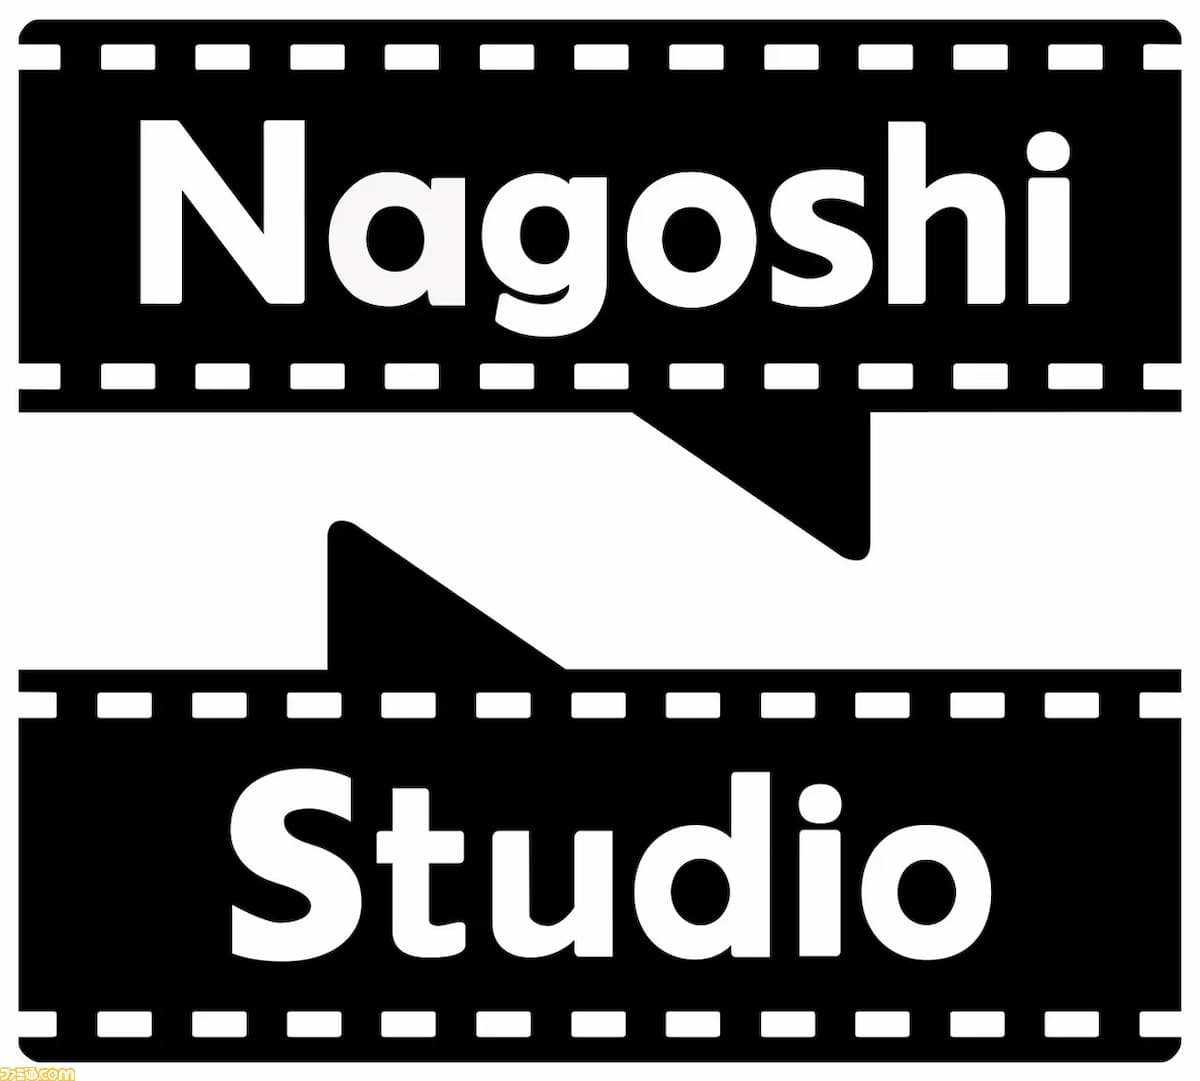 Nagoshi Studio hướng đến thị trường Nhật Bản đầu tiên.